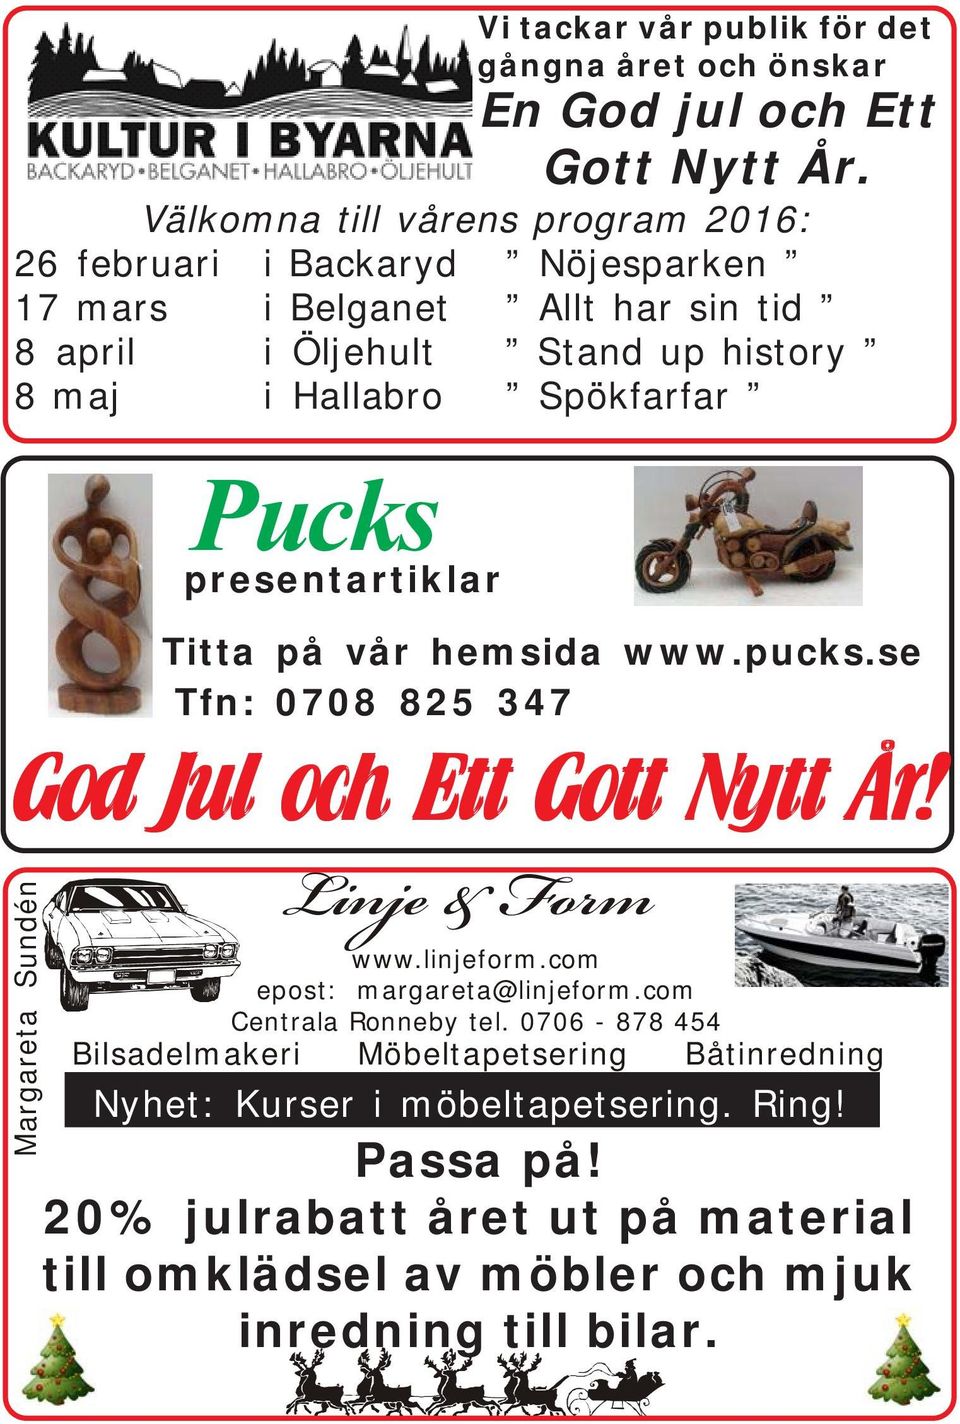 Spökfarfar Margareta Sundén Pucks presentartiklar Titta på vår hemsida www.pucks.se Tfn: 0708 825 347 God Jul och Ett Gott Nytt År! Linje & Form www.linjeform.